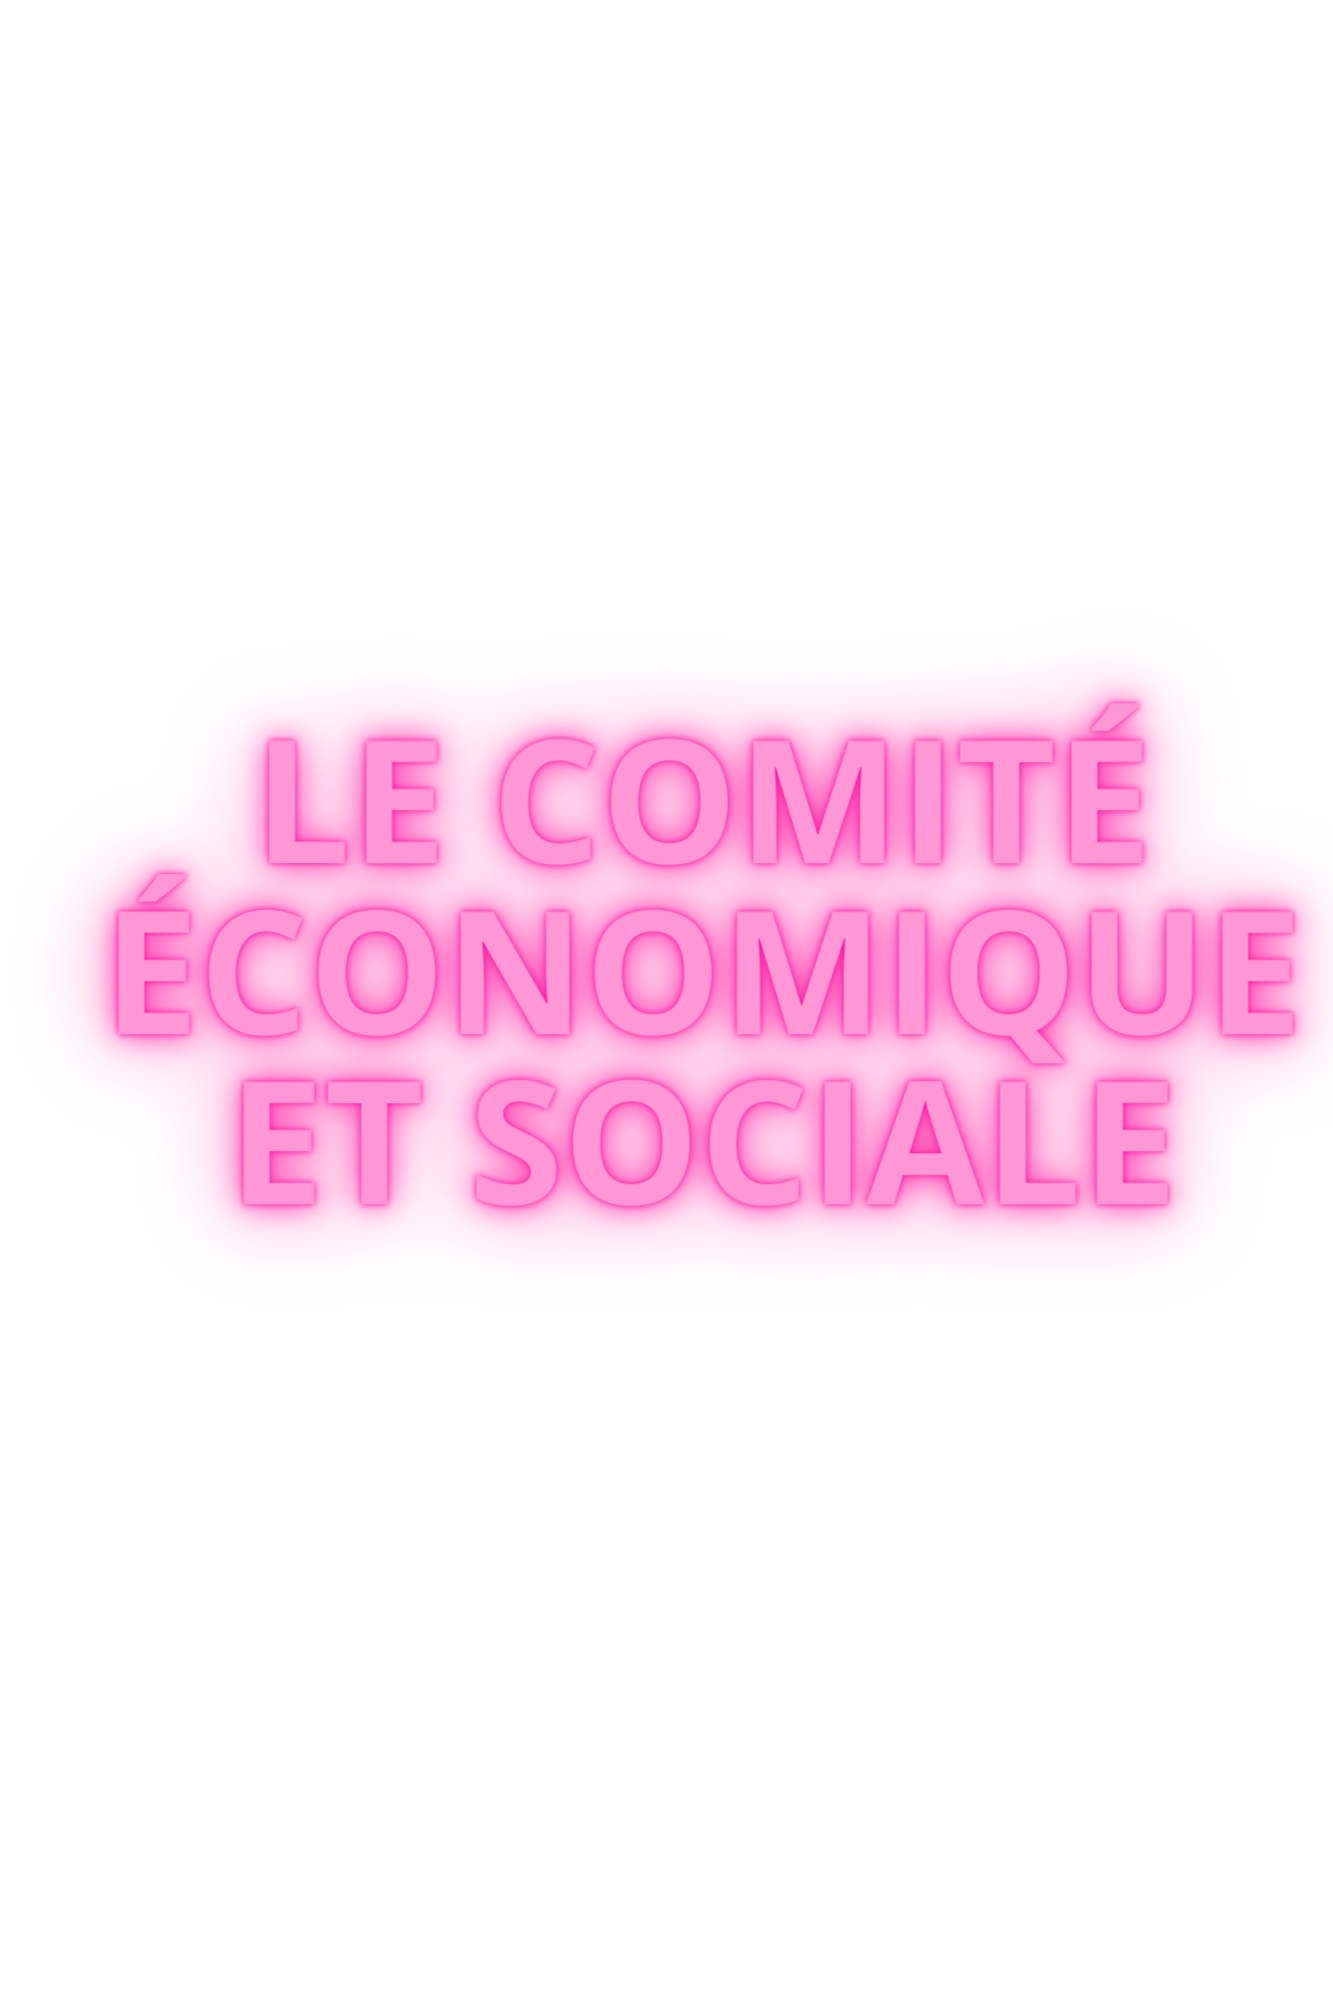 Le comité économique et social